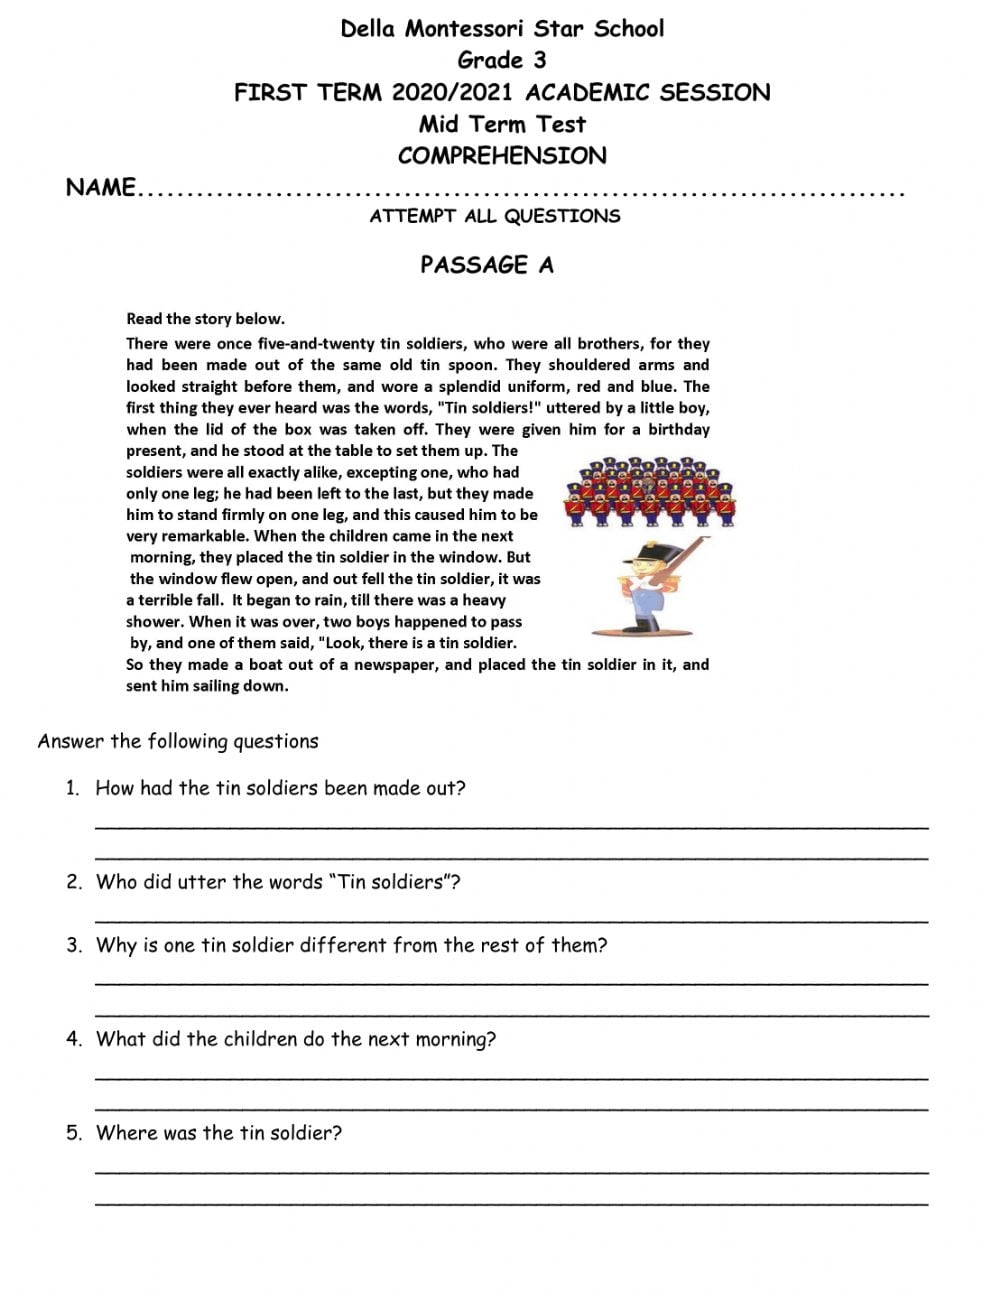 Grade 3 Comprehension Mid Term Test Worksheet